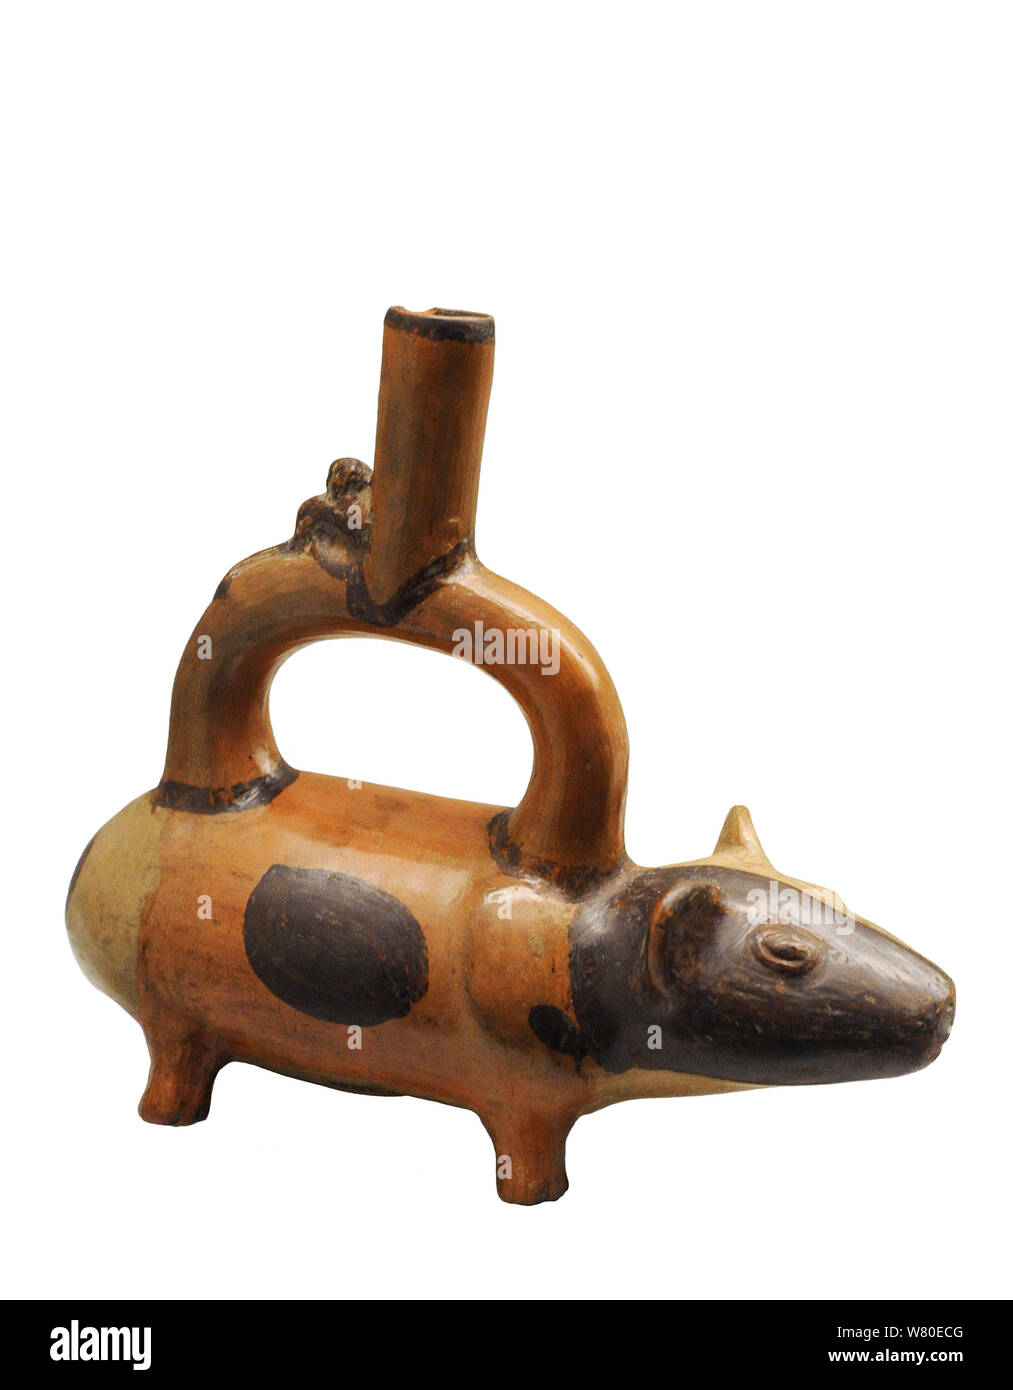 Zoomorphic vessel depicting a guinea pig. Ceramic. Chimu culture. Late Intermediate Horizon (1000-1470 AD). Peru. Museum of the Americas. Madrid, Spain. Stock Photo